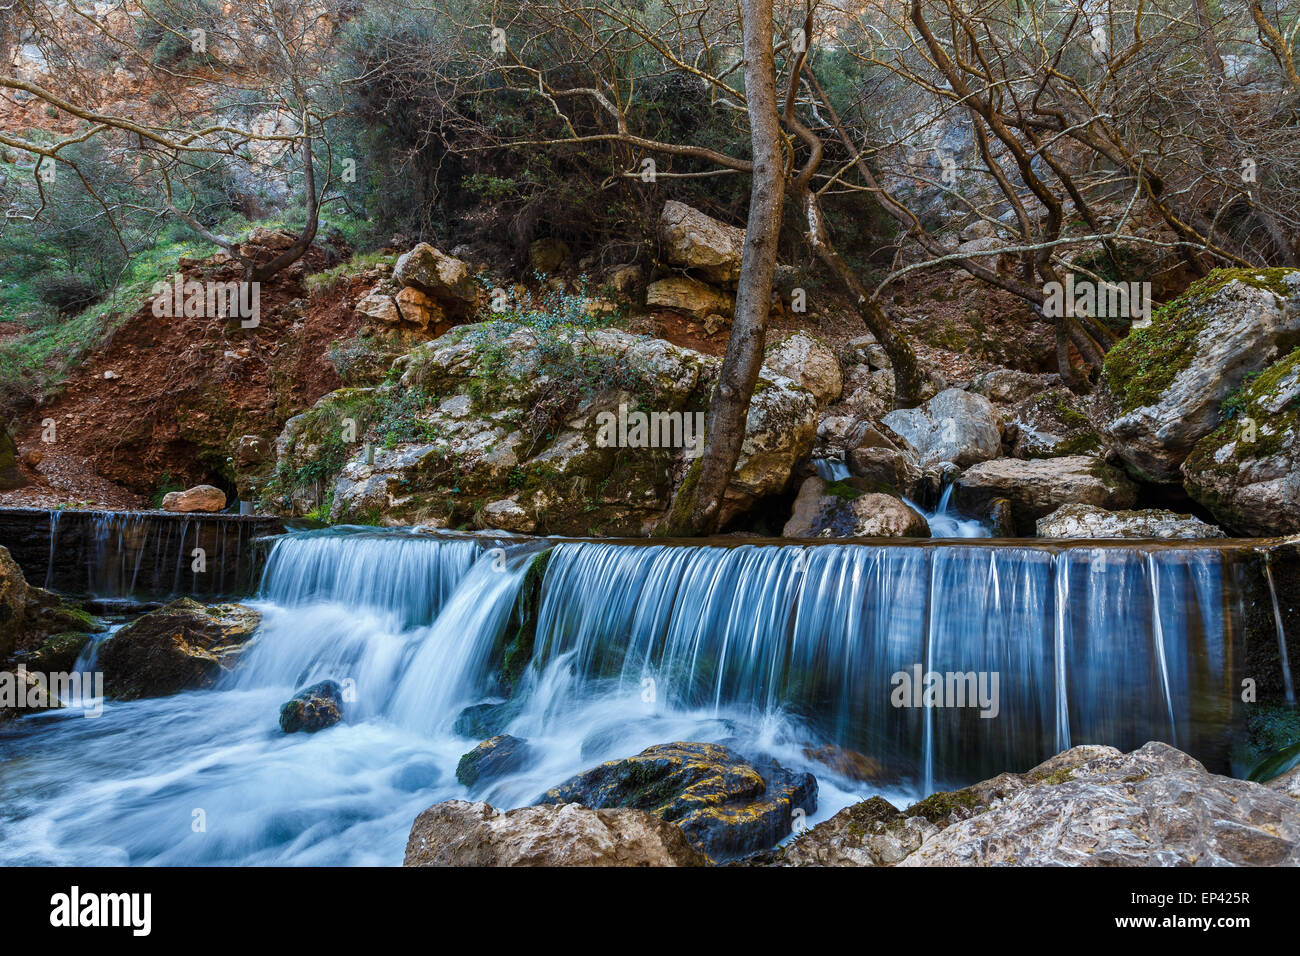 Cascade naturelle au fond de forêt en Grèce, long exposure photography Banque D'Images